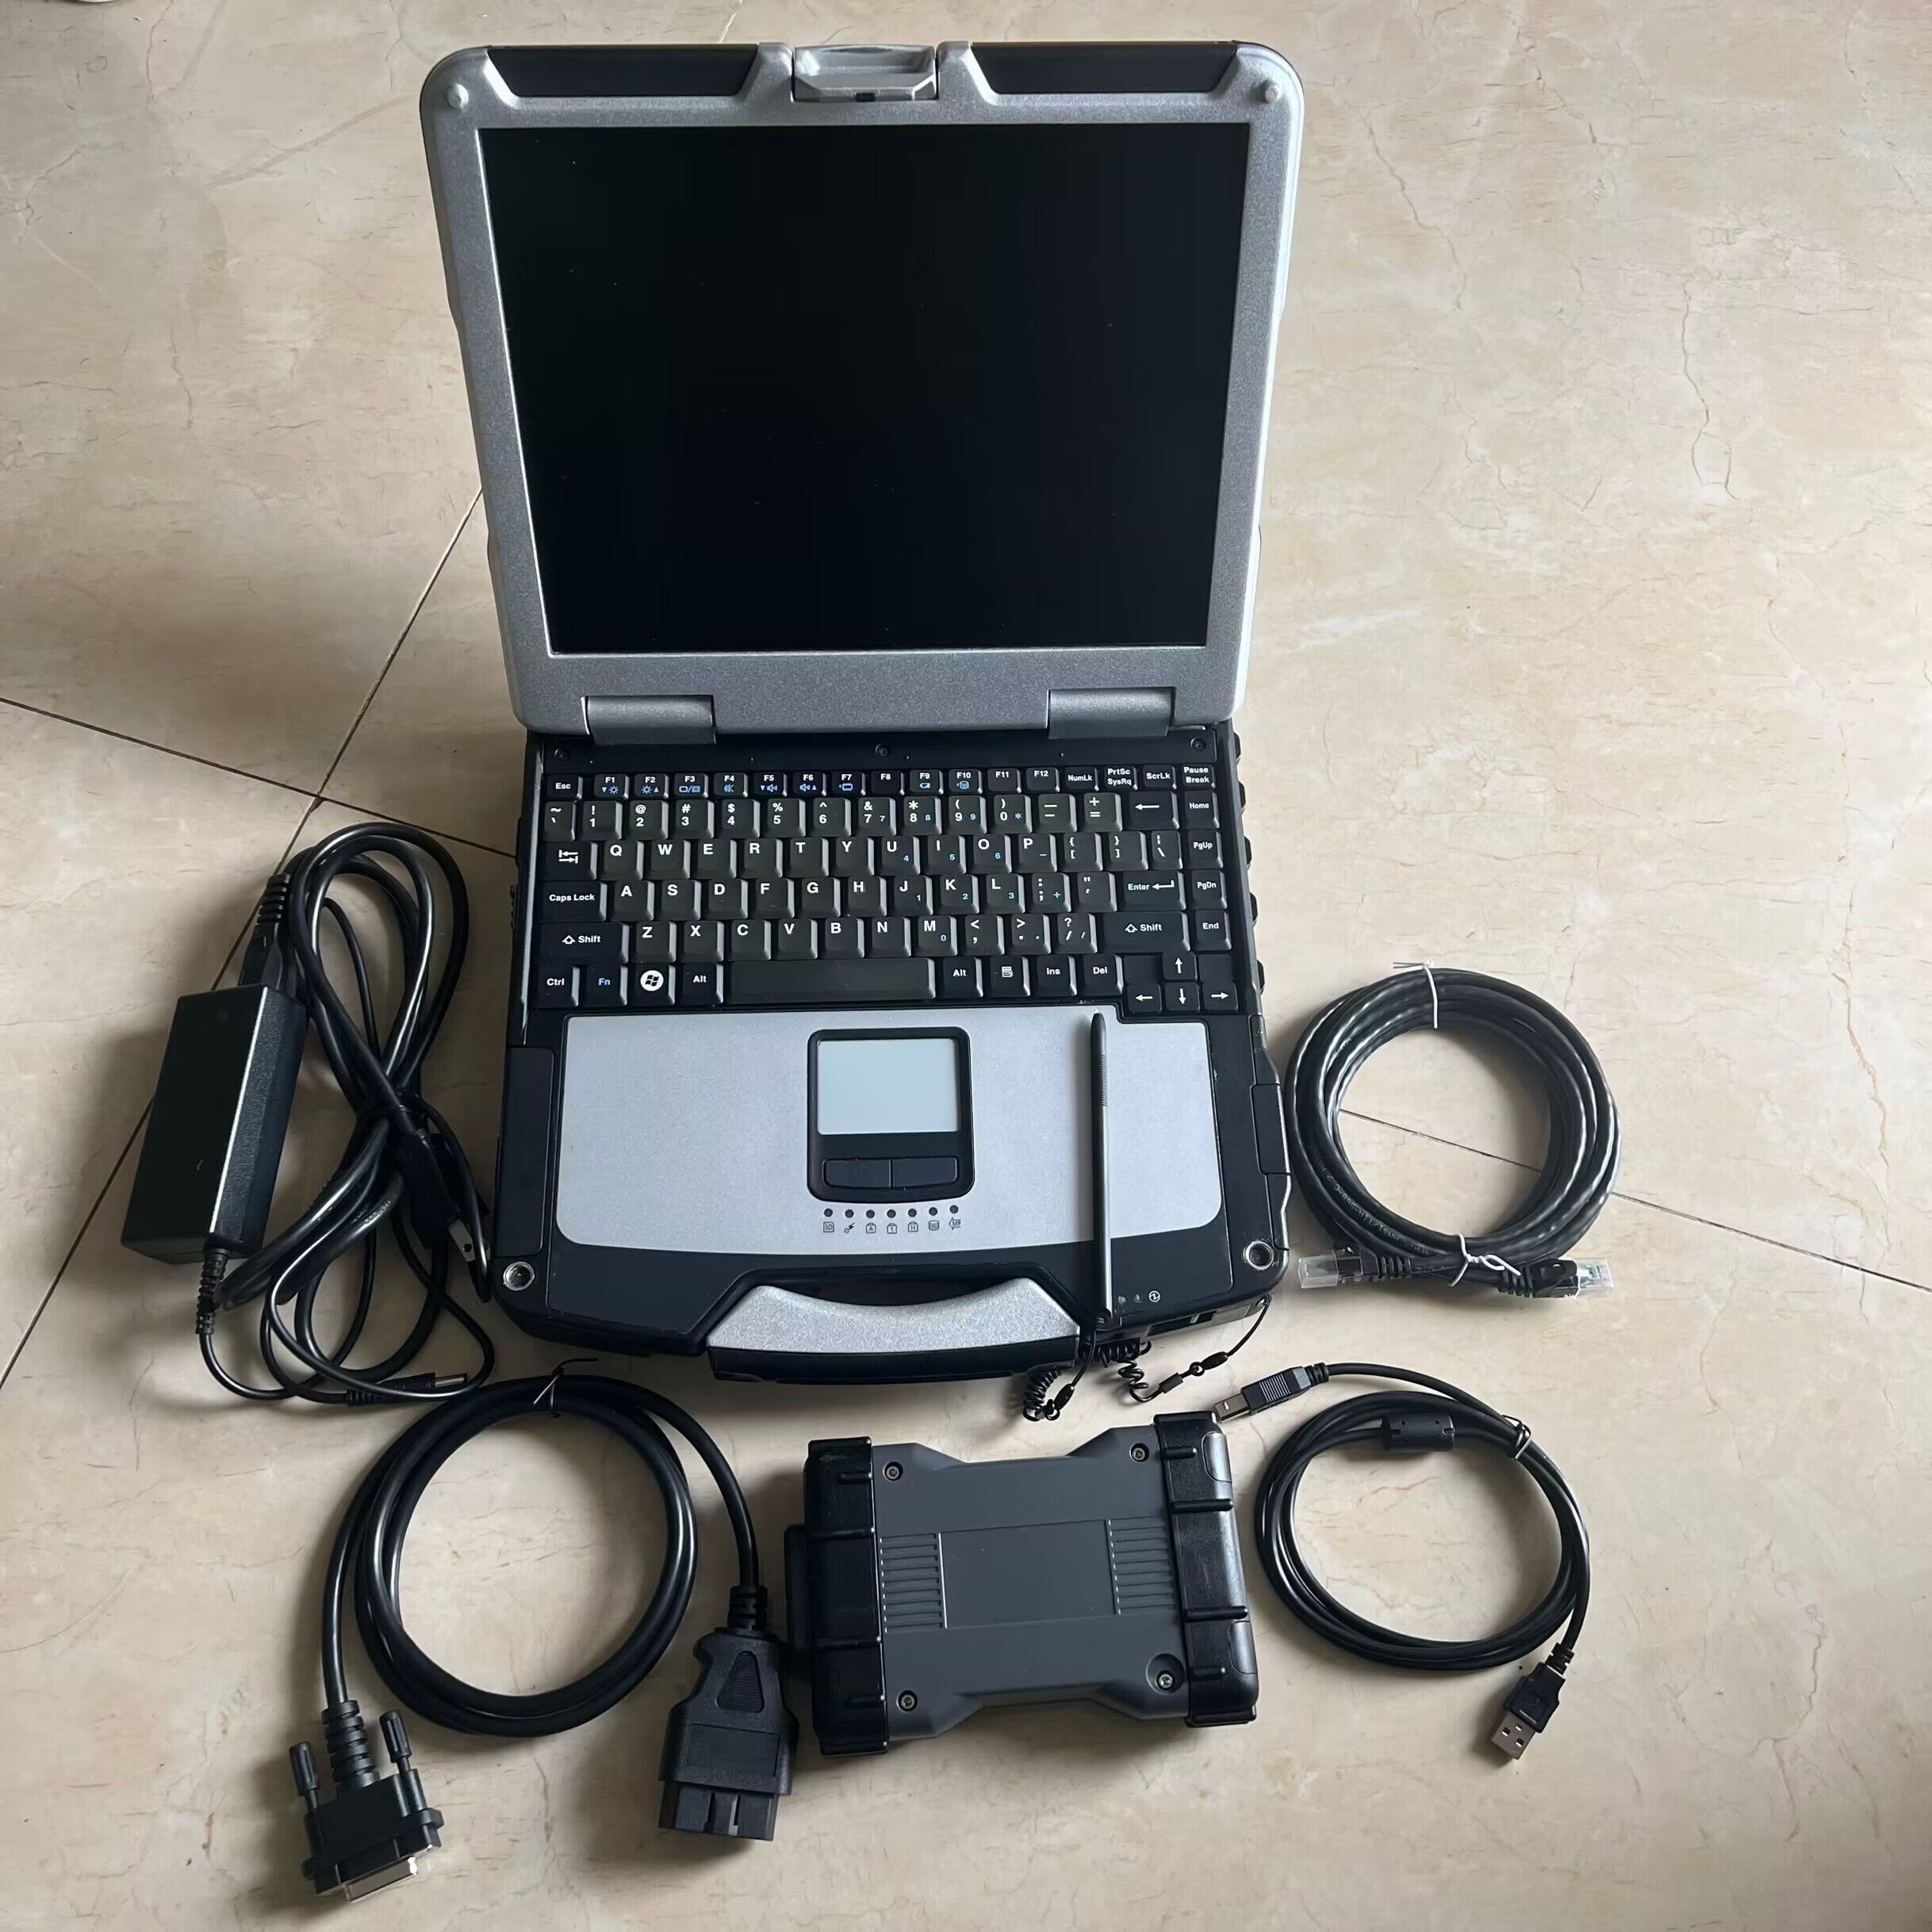 WIFI MB Star Diagnostic C6 SD Narzędzie VCI Can DOIP Protokół SSD 480GB Xentry Das Laptop CF30 Touch Computer gotowy do użycia 2 lata gwarancji